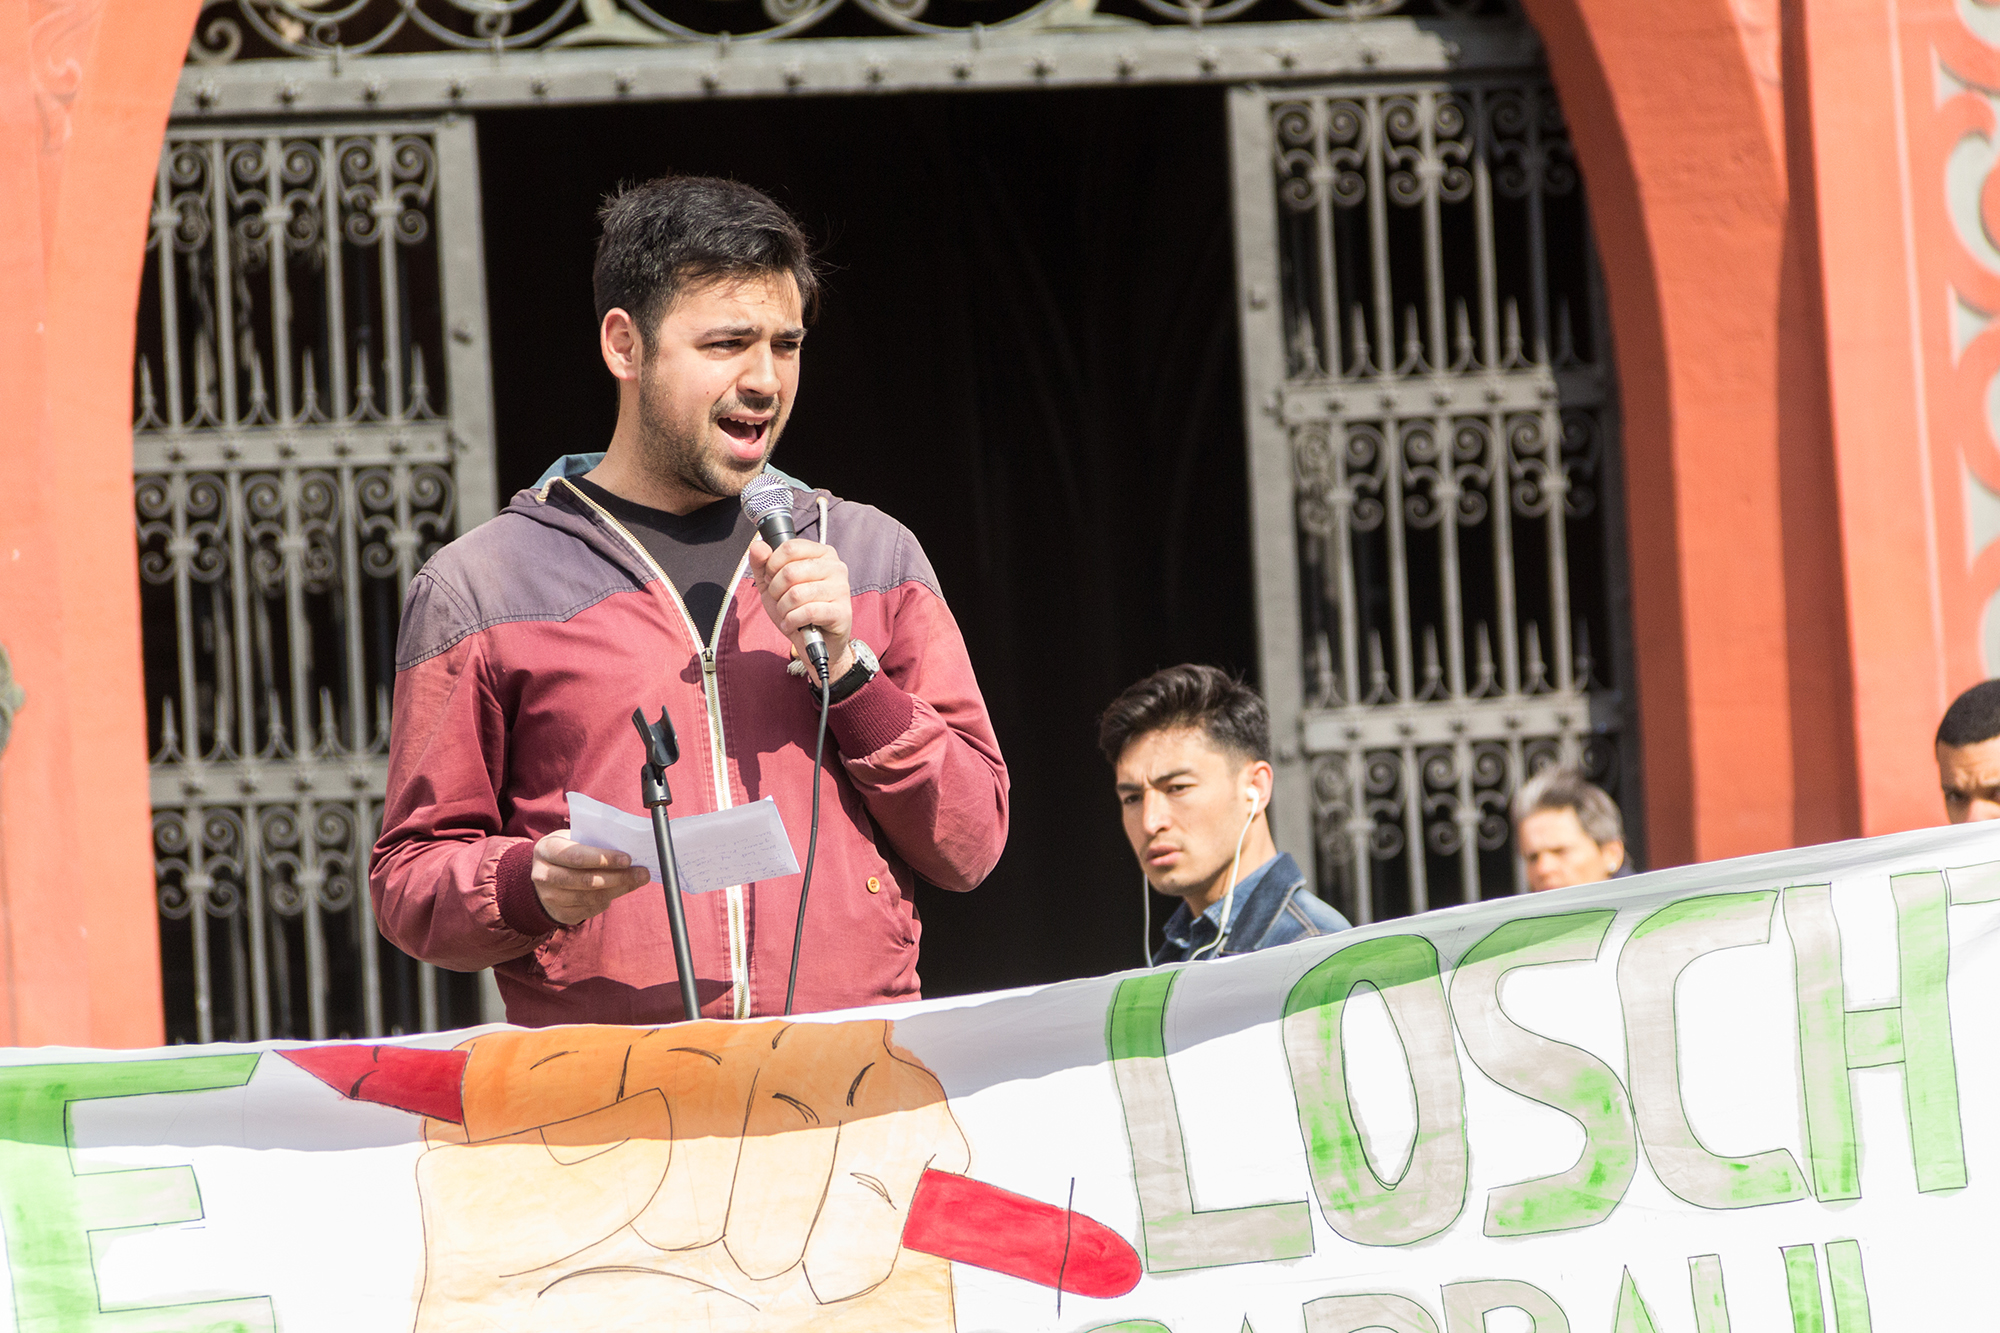 Adil Koller, Präsident der SP Baselland, unterstützte die protestierenden Schüler mit einer Rede vor dem Rathaus. Viele Worte waren aber eher in Richtung Liestal gerichtet.